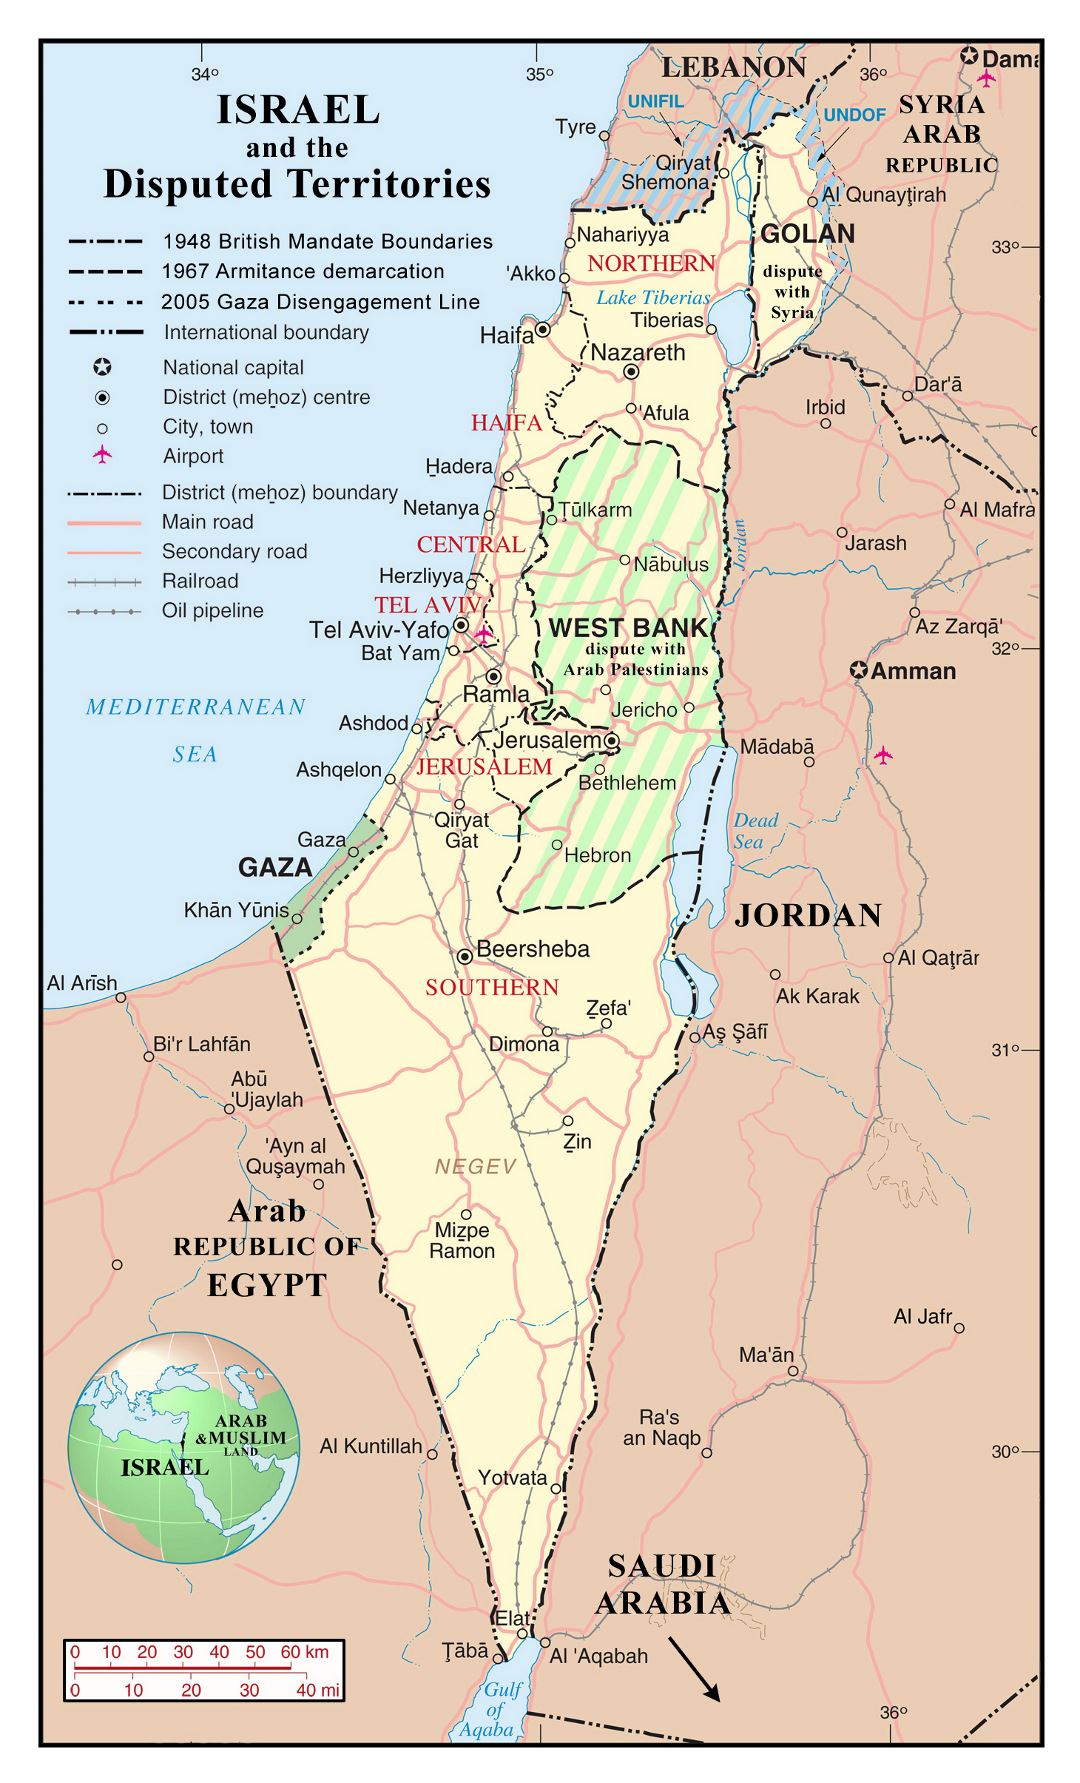 Большая детальная политическая и административная карта Израиля со спорными территориями